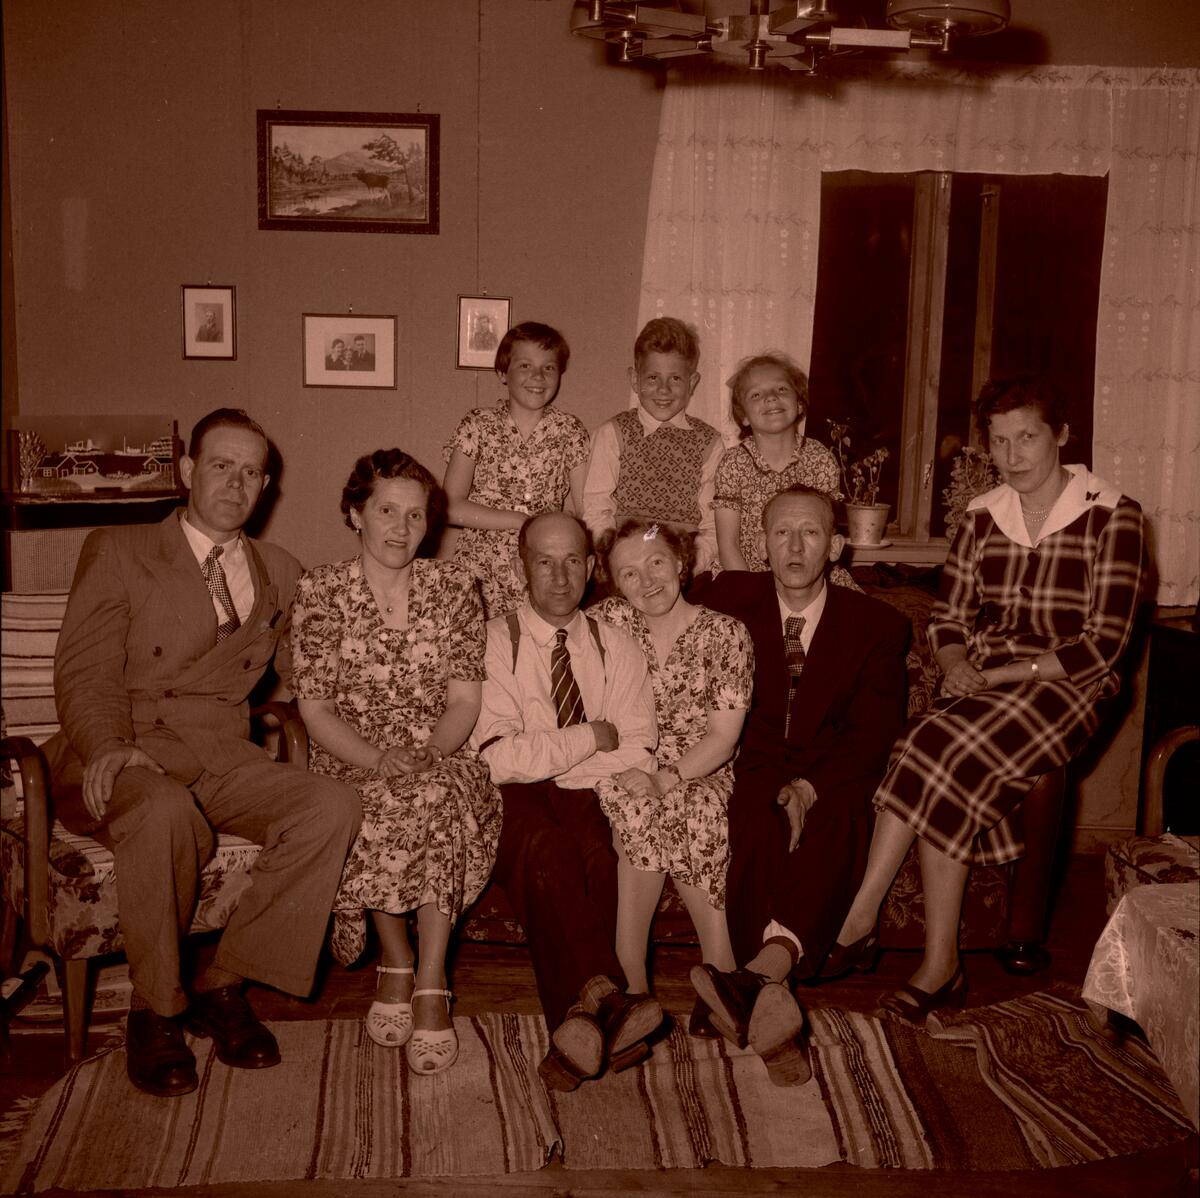 Gruppebilde av ni mennesker i en stue.